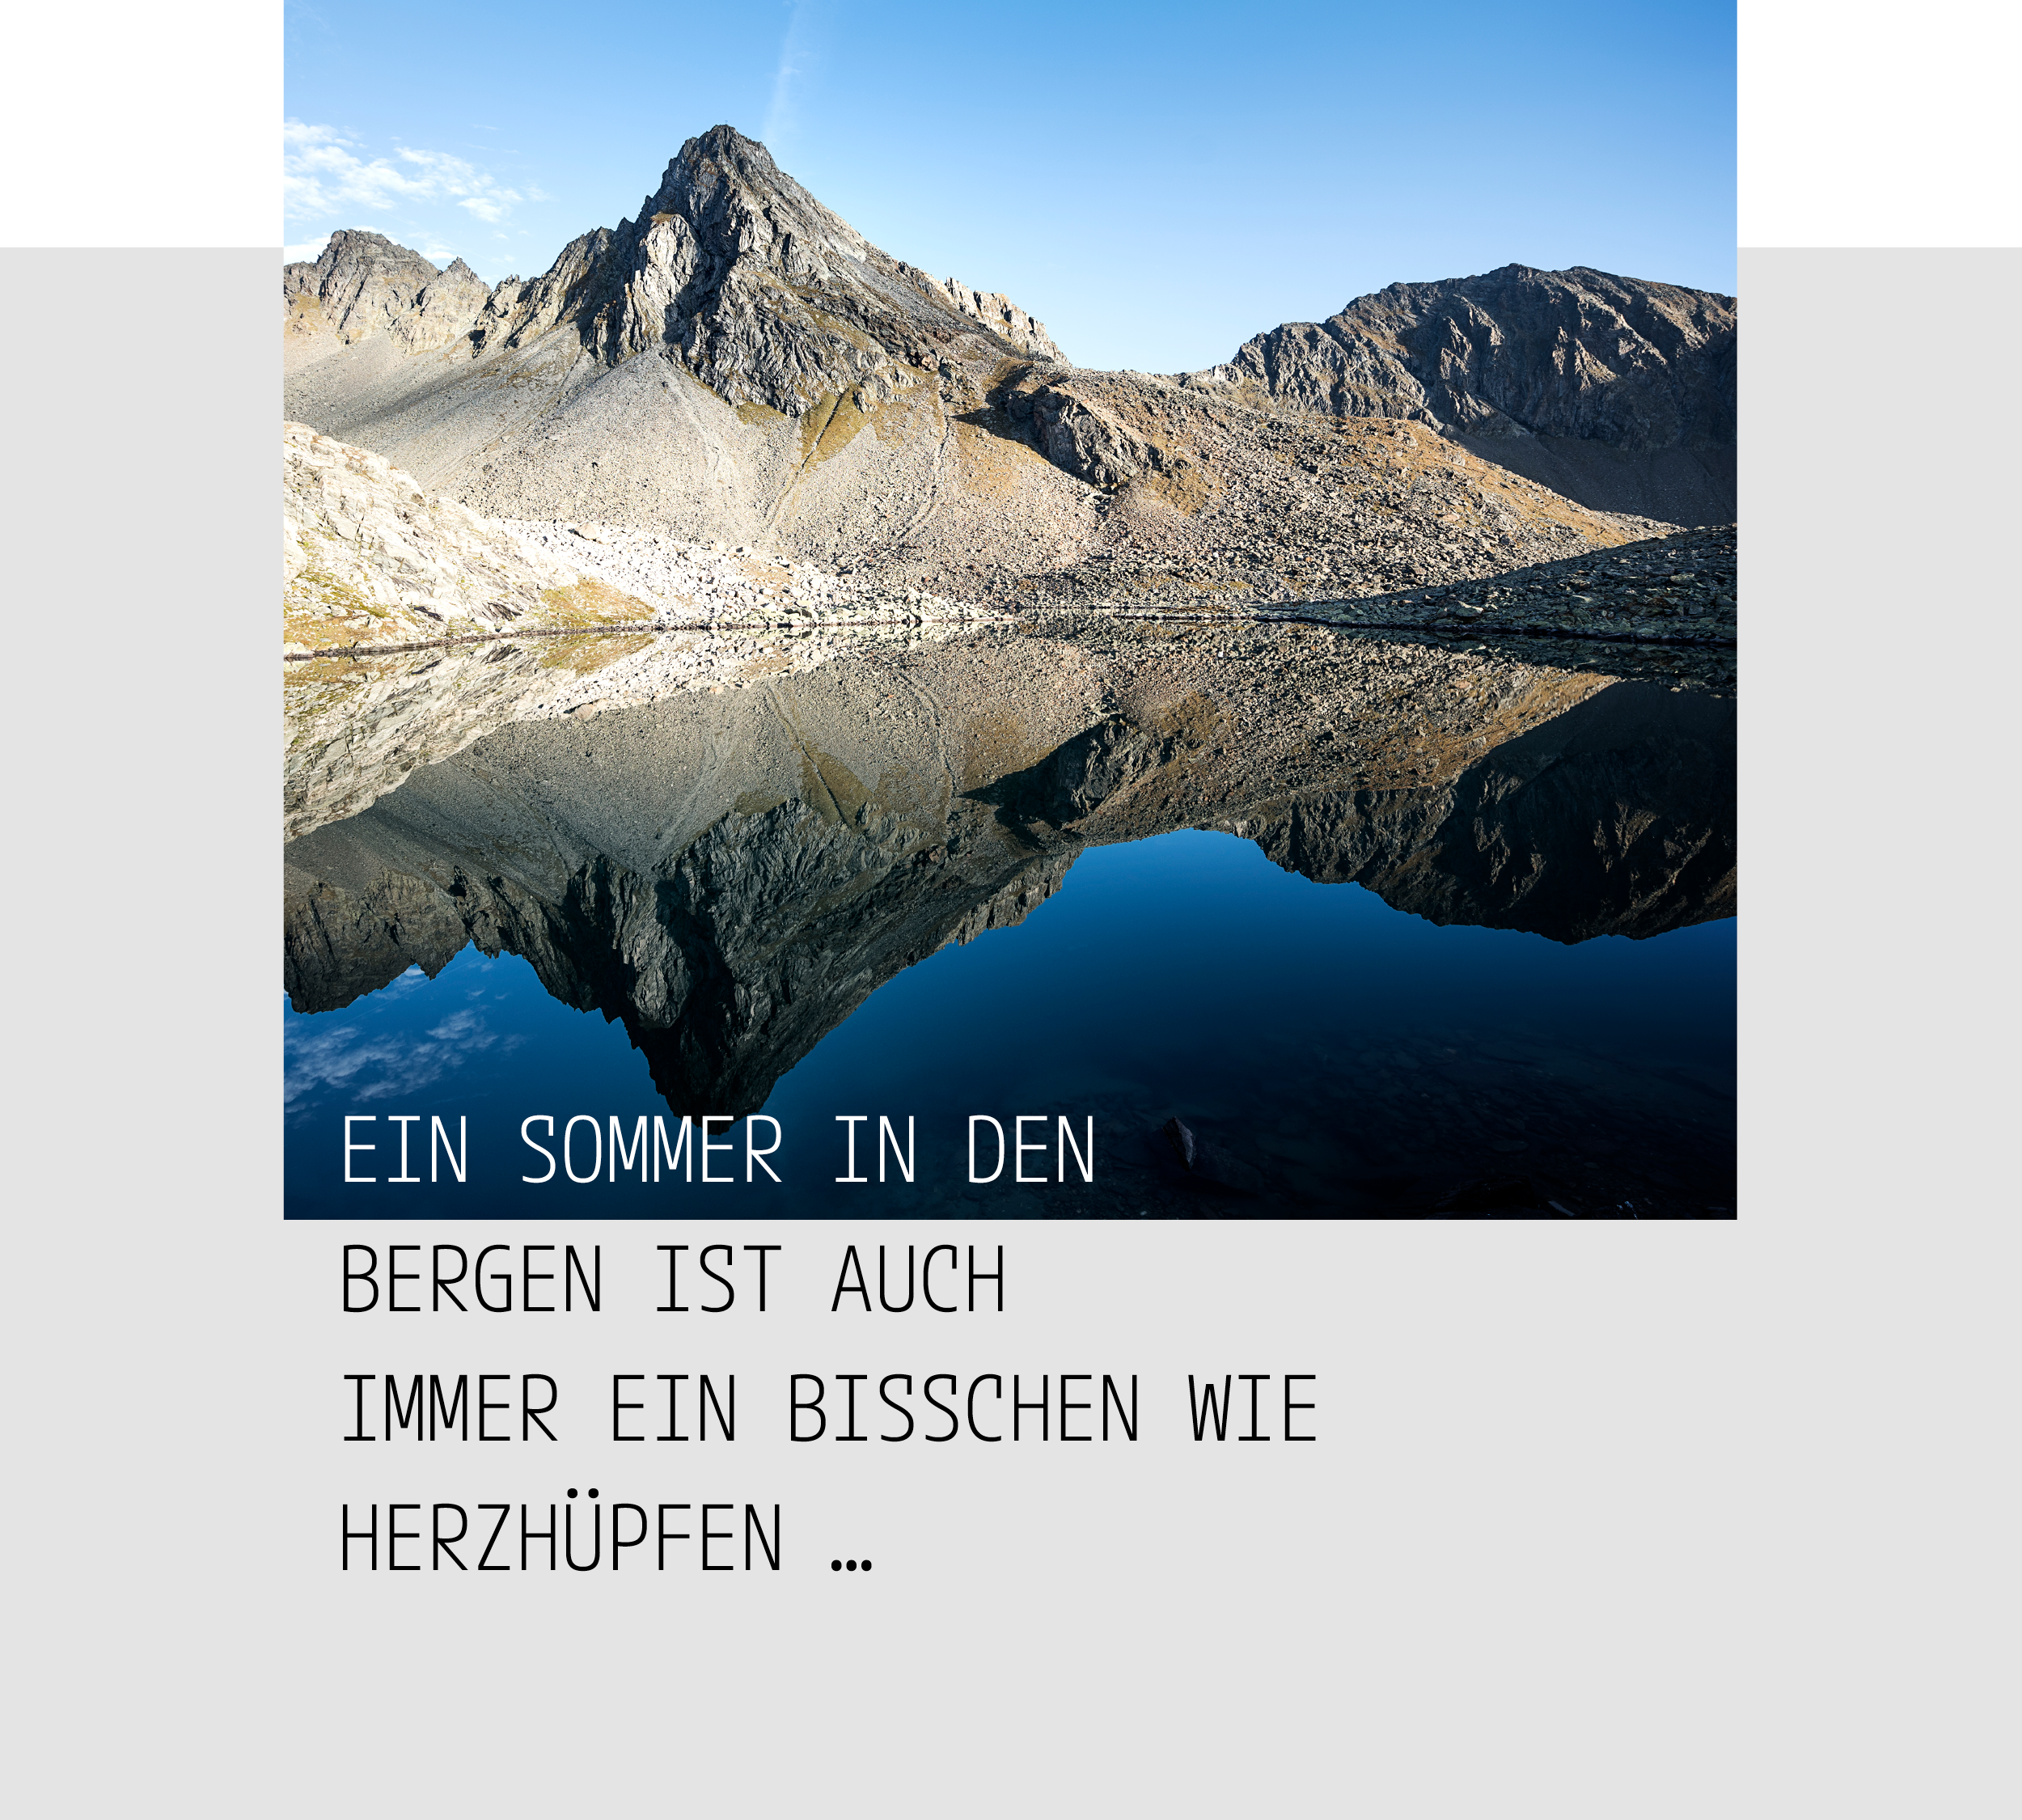 Kaser-Chalet-Sommer-Rinnensee-Rinnenspitze-Franz-Senn-Huette-Sommerzitat-B2500px